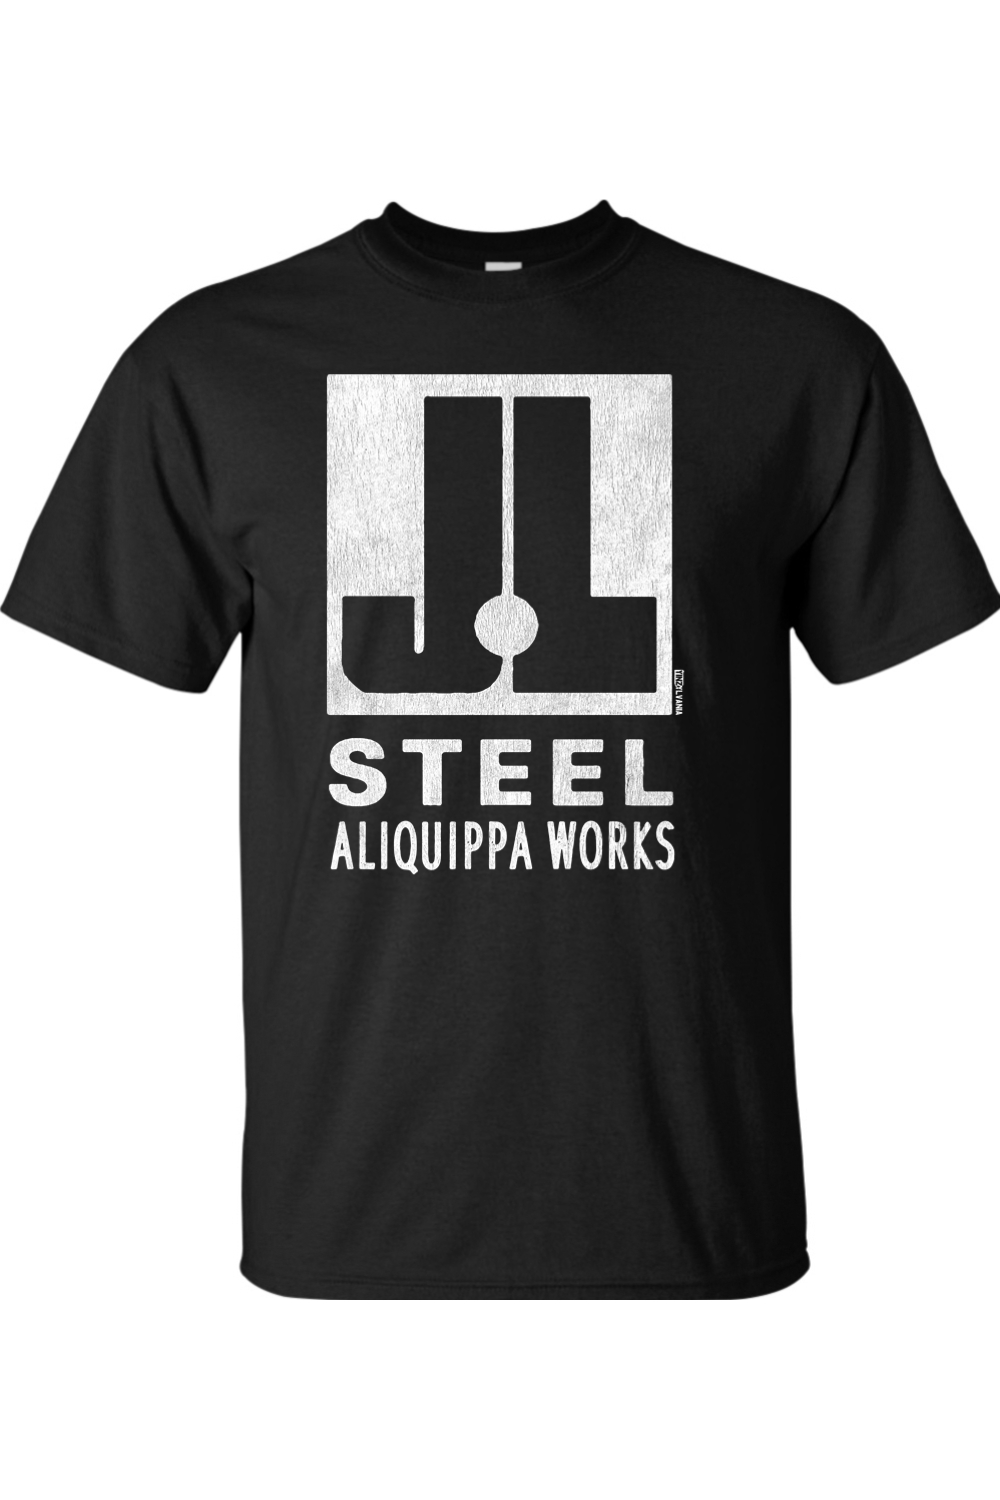 J&L Steel - Aliquippa Works - Big & Tall T-Shirt - Yinzylvania